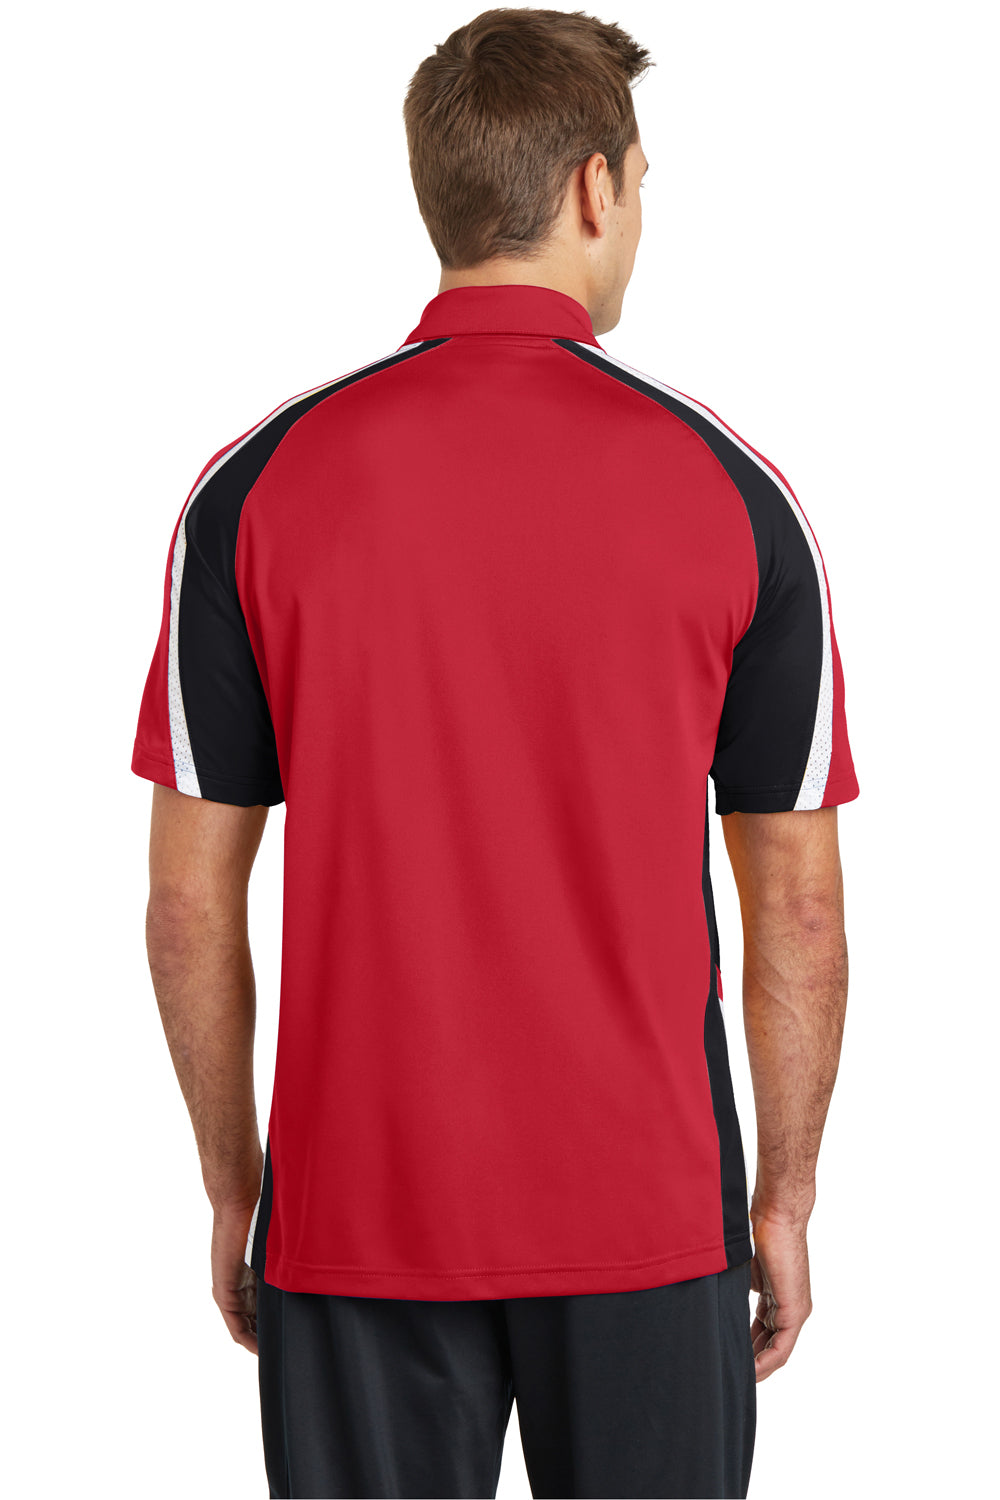 Sport-Tek ST654 Mens Sport-Wick Moisture Wicking Short Sleeve Polo Shirt Red/Black/White Back